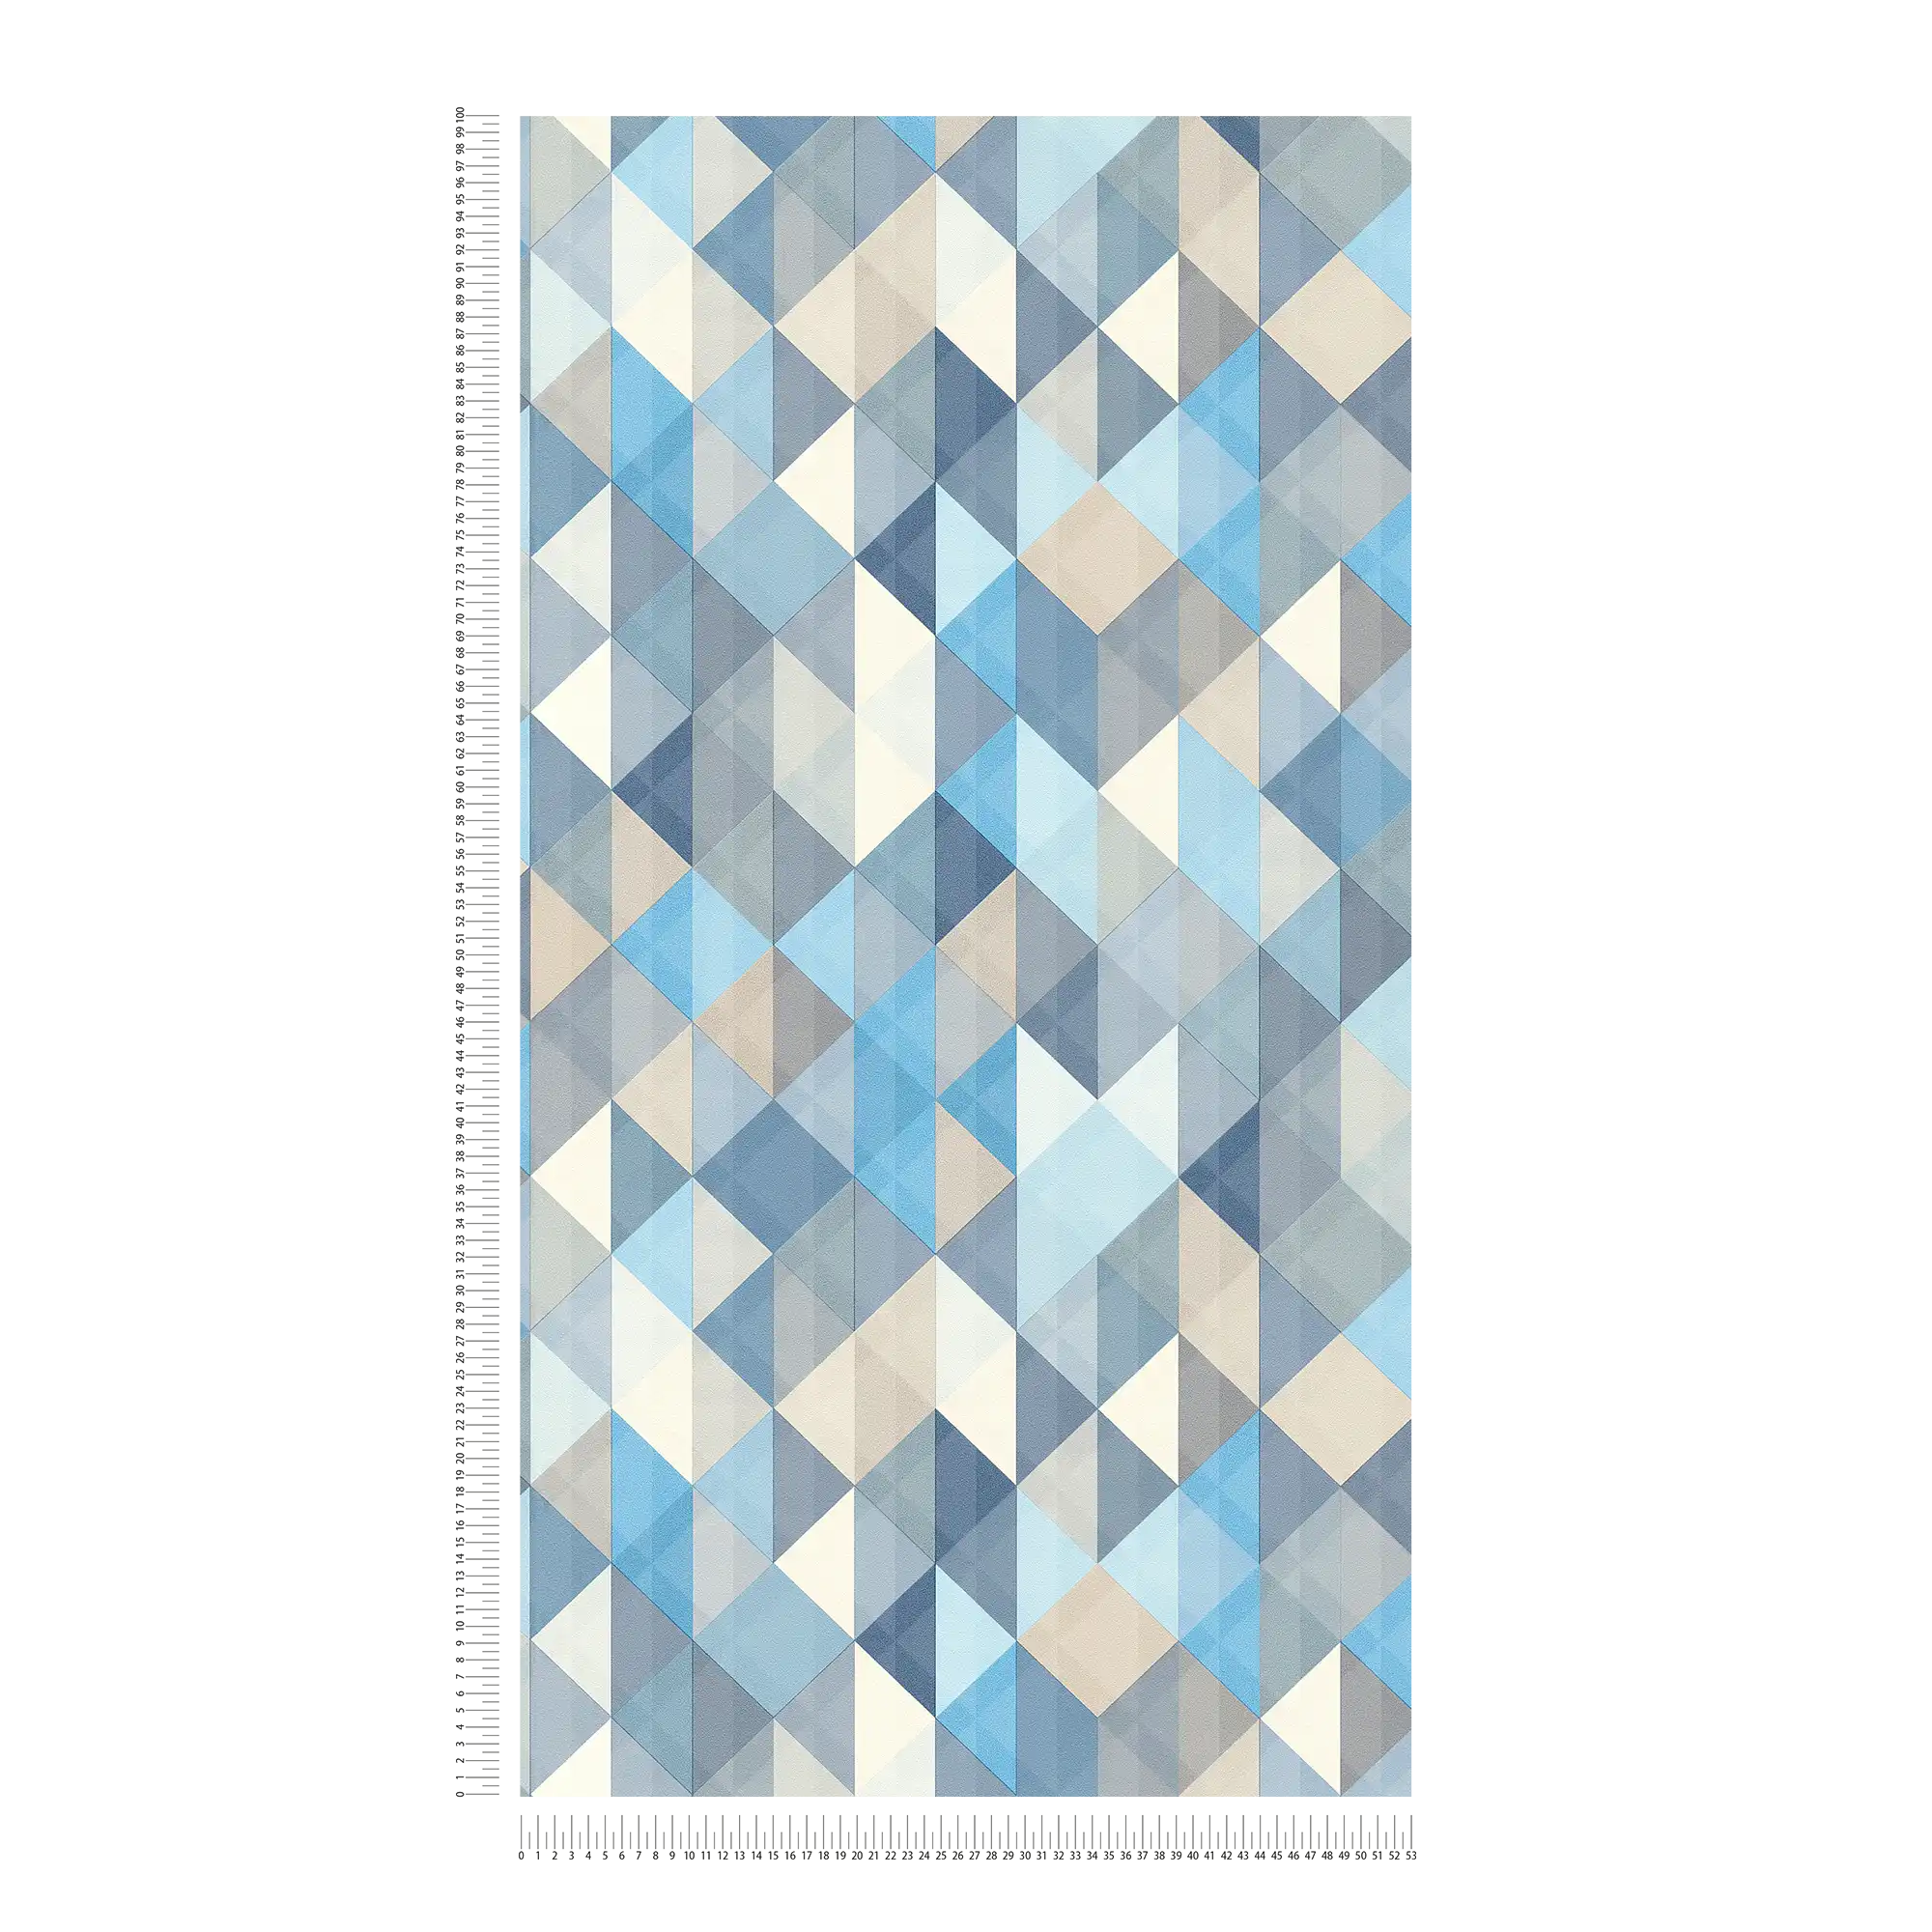             Papier peint Scandinavian Style à motifs géométriques - bleu, gris, beige
        